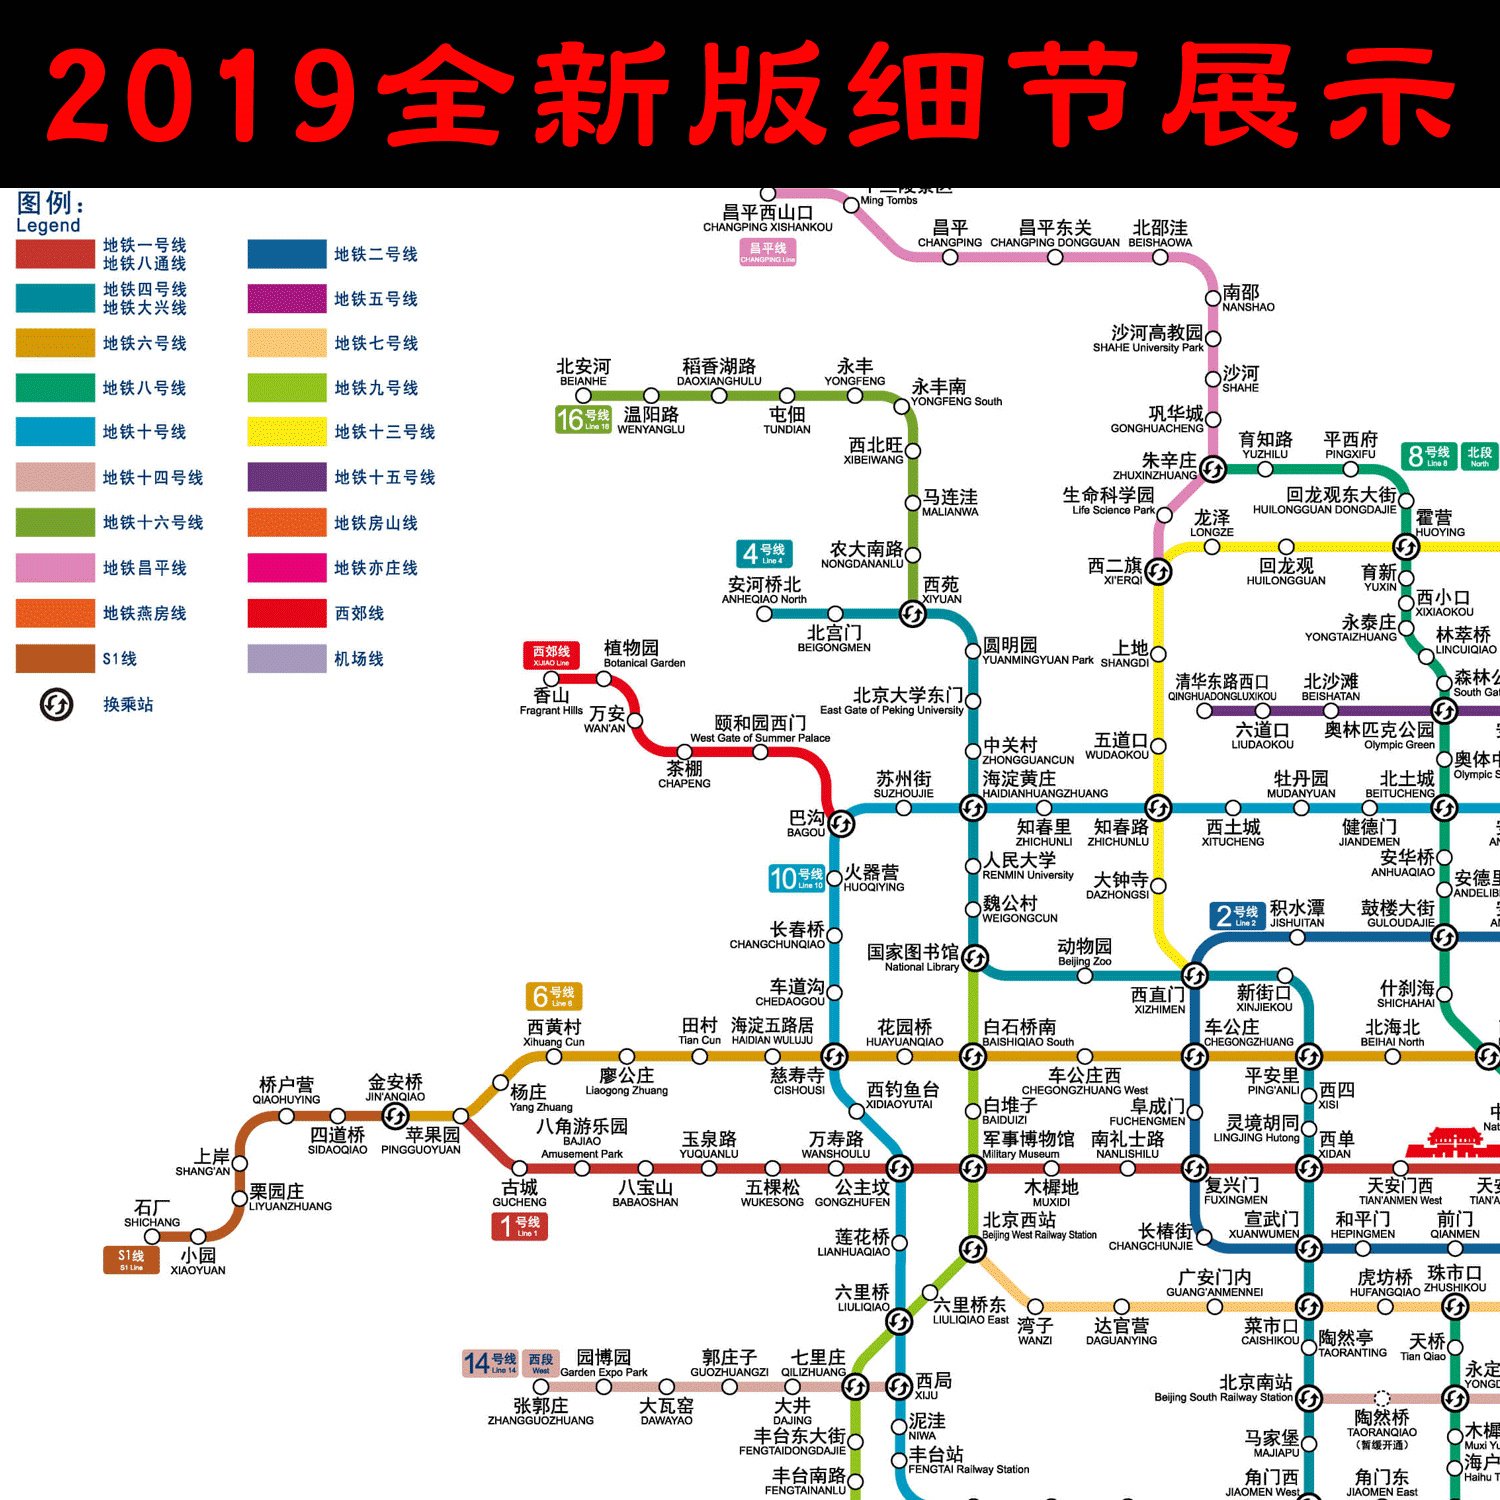 北京交通地铁线路图2019新版 北京市地铁换乘路线示意图海报贴纸